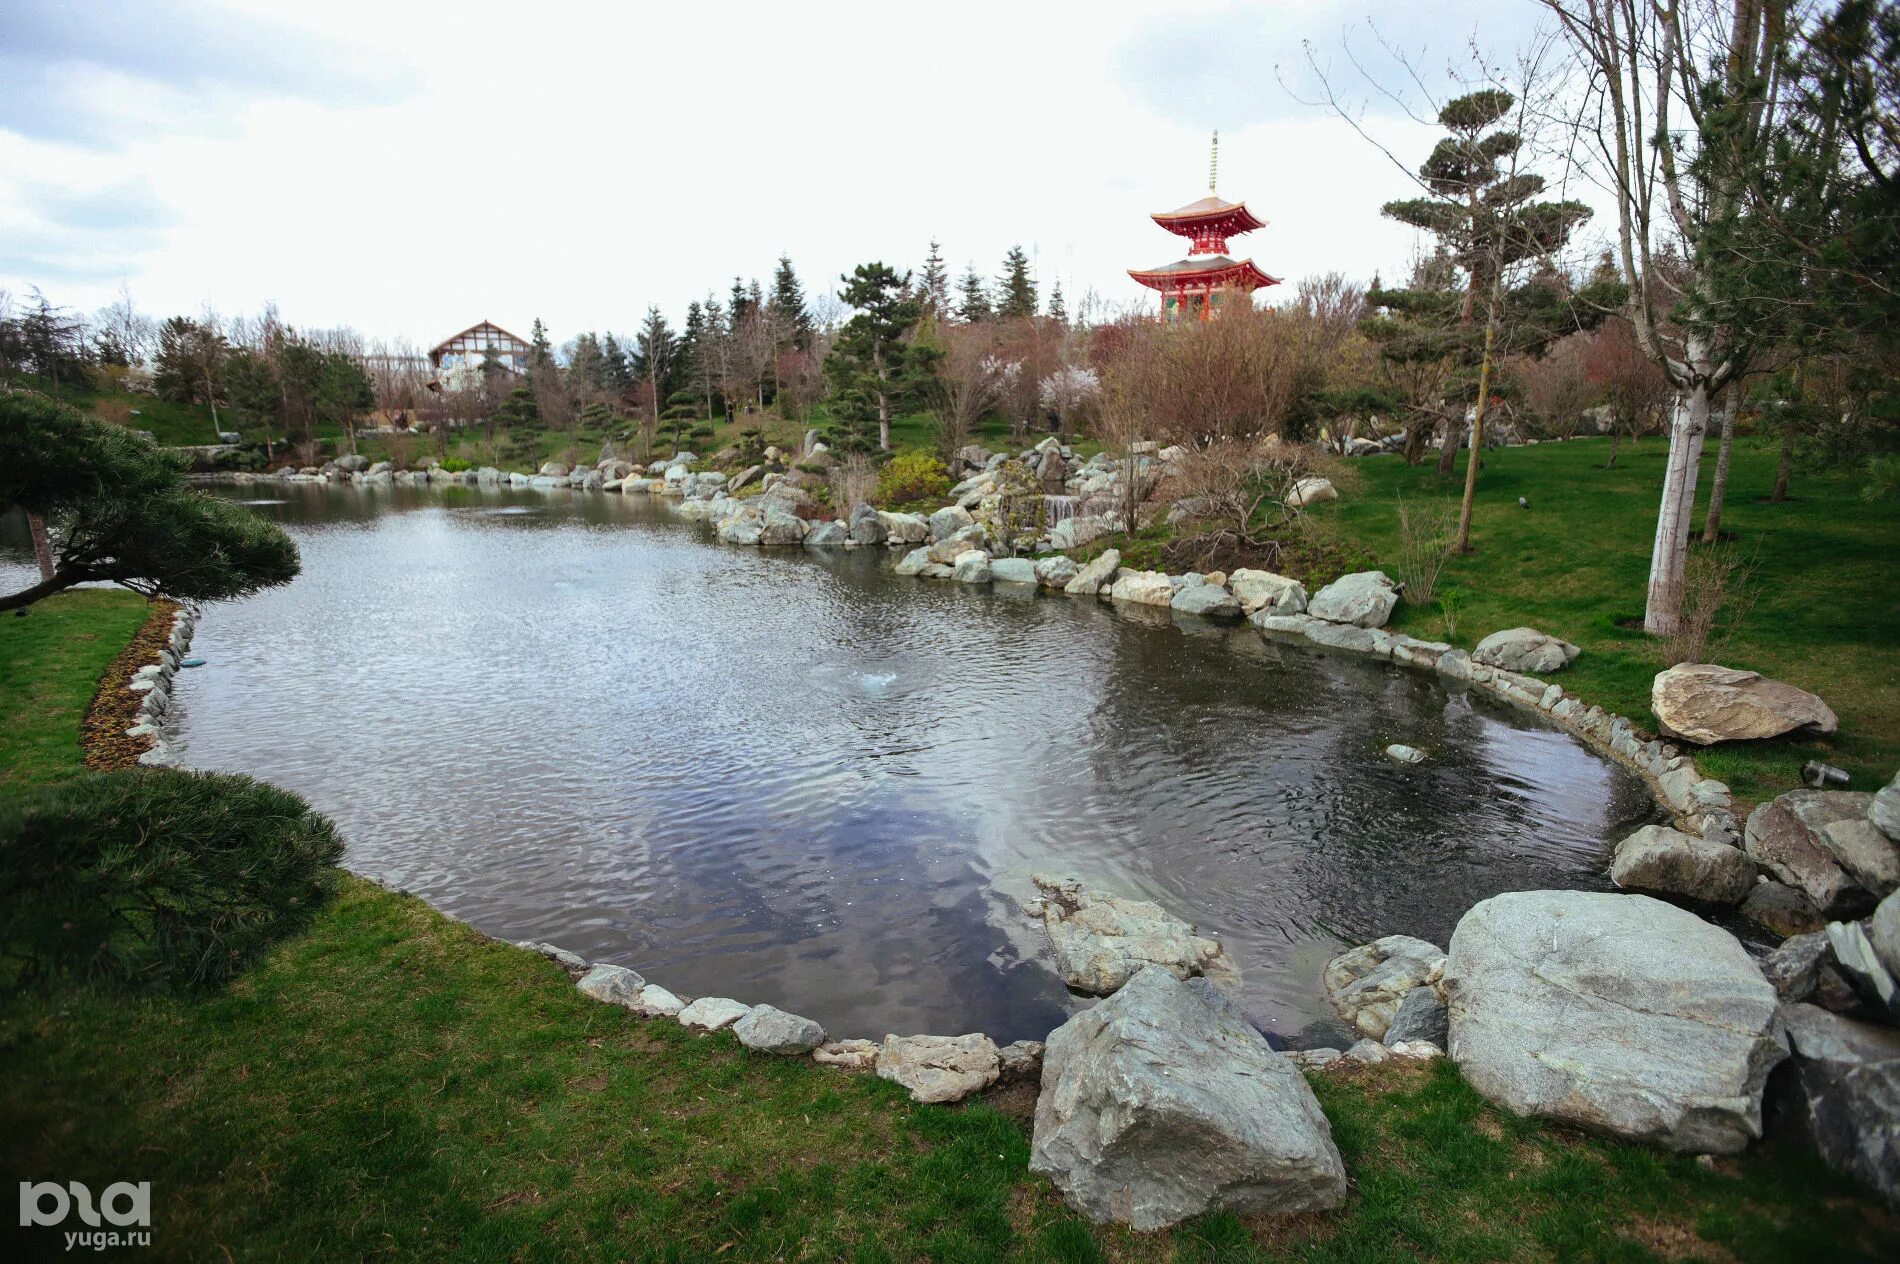 Японский сад краснодар где. Парк Краснодар японский сад. Краснодар чпонский сад коминка. Японский сад в парке Краснодар. Краснодар японский сад рётей.